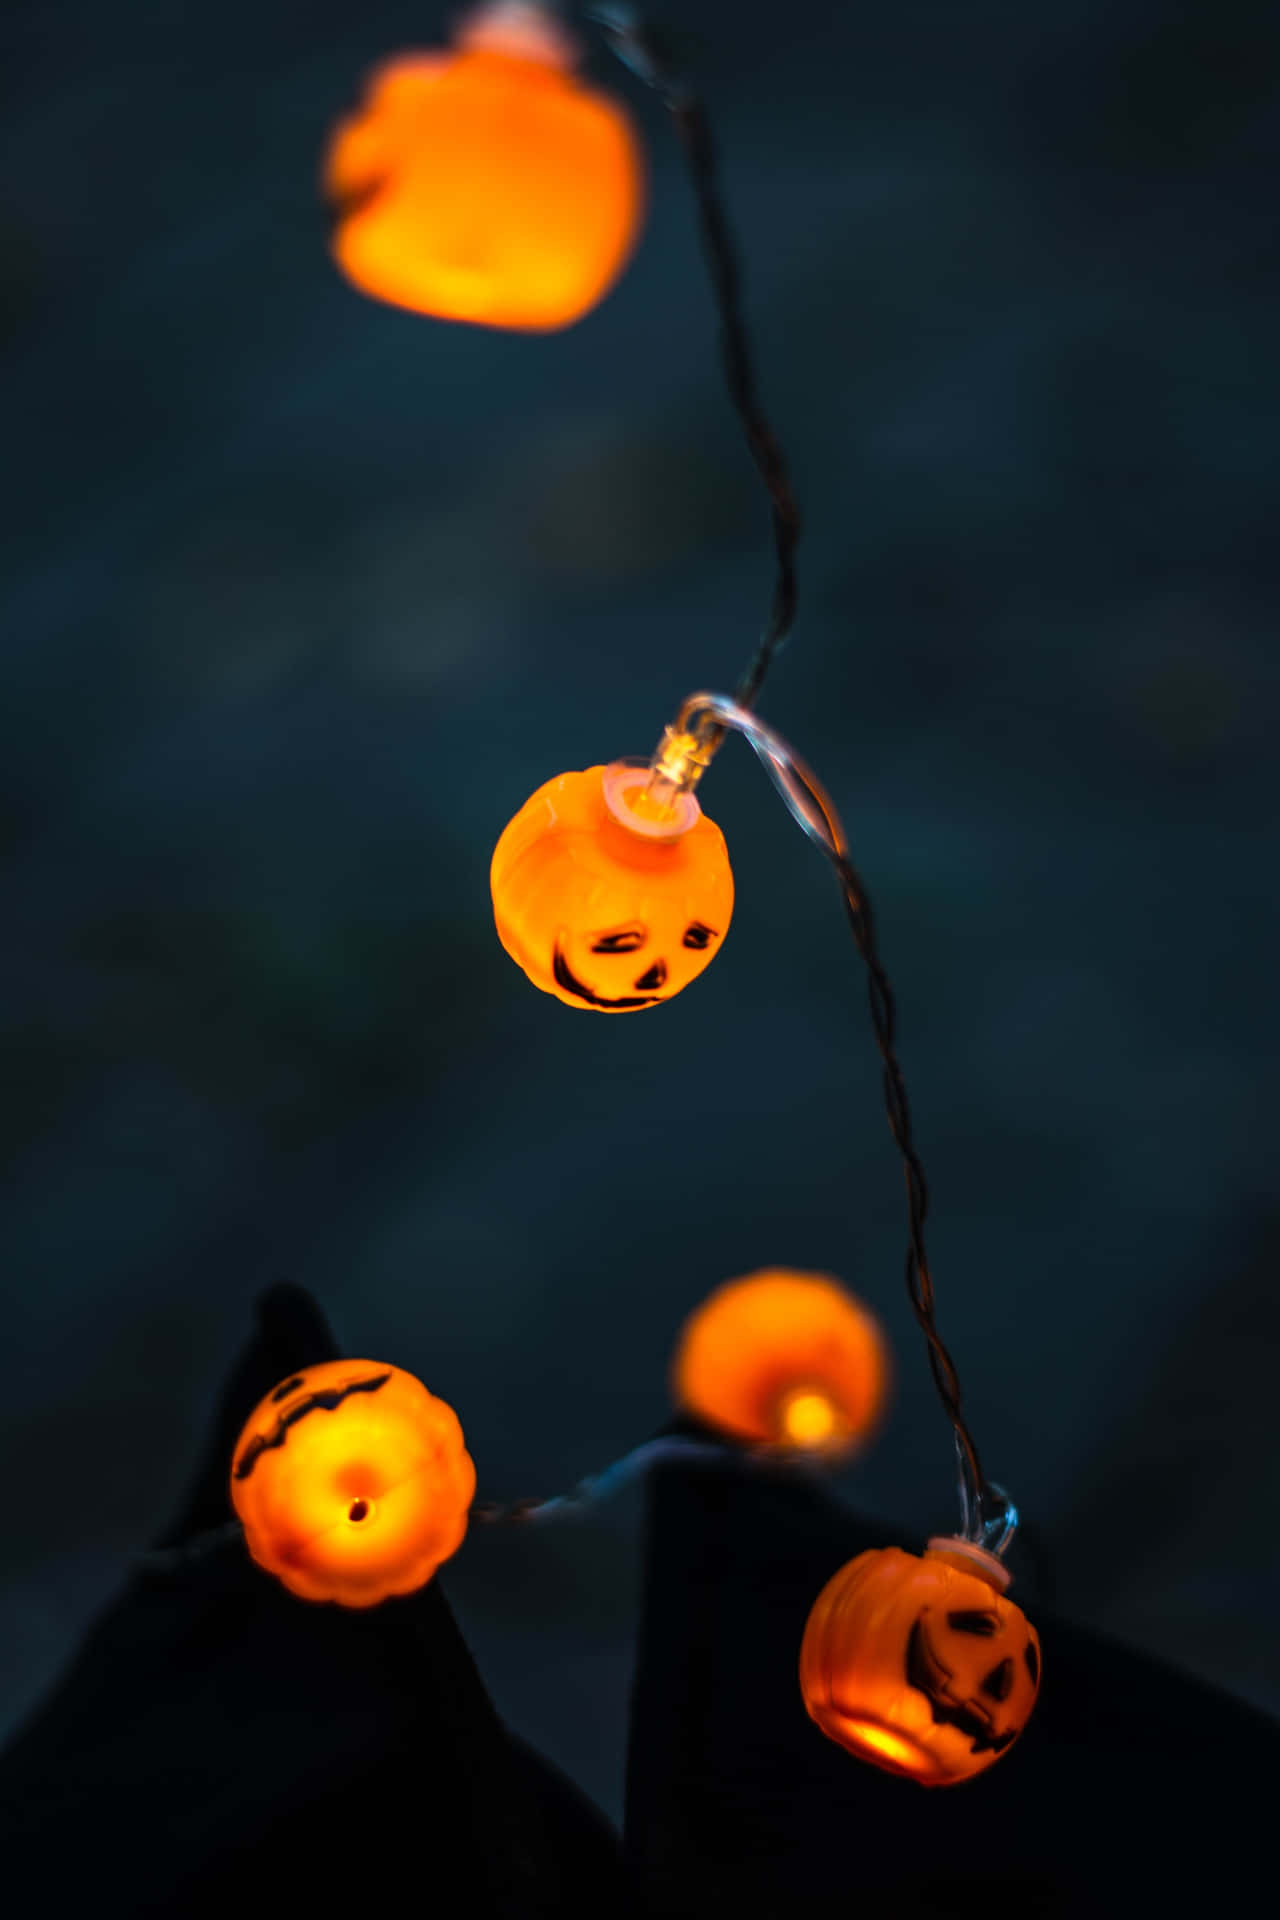 Fondode Halloween De Alta Resolución Con Luces De Calabaza Jack-o-lantern.